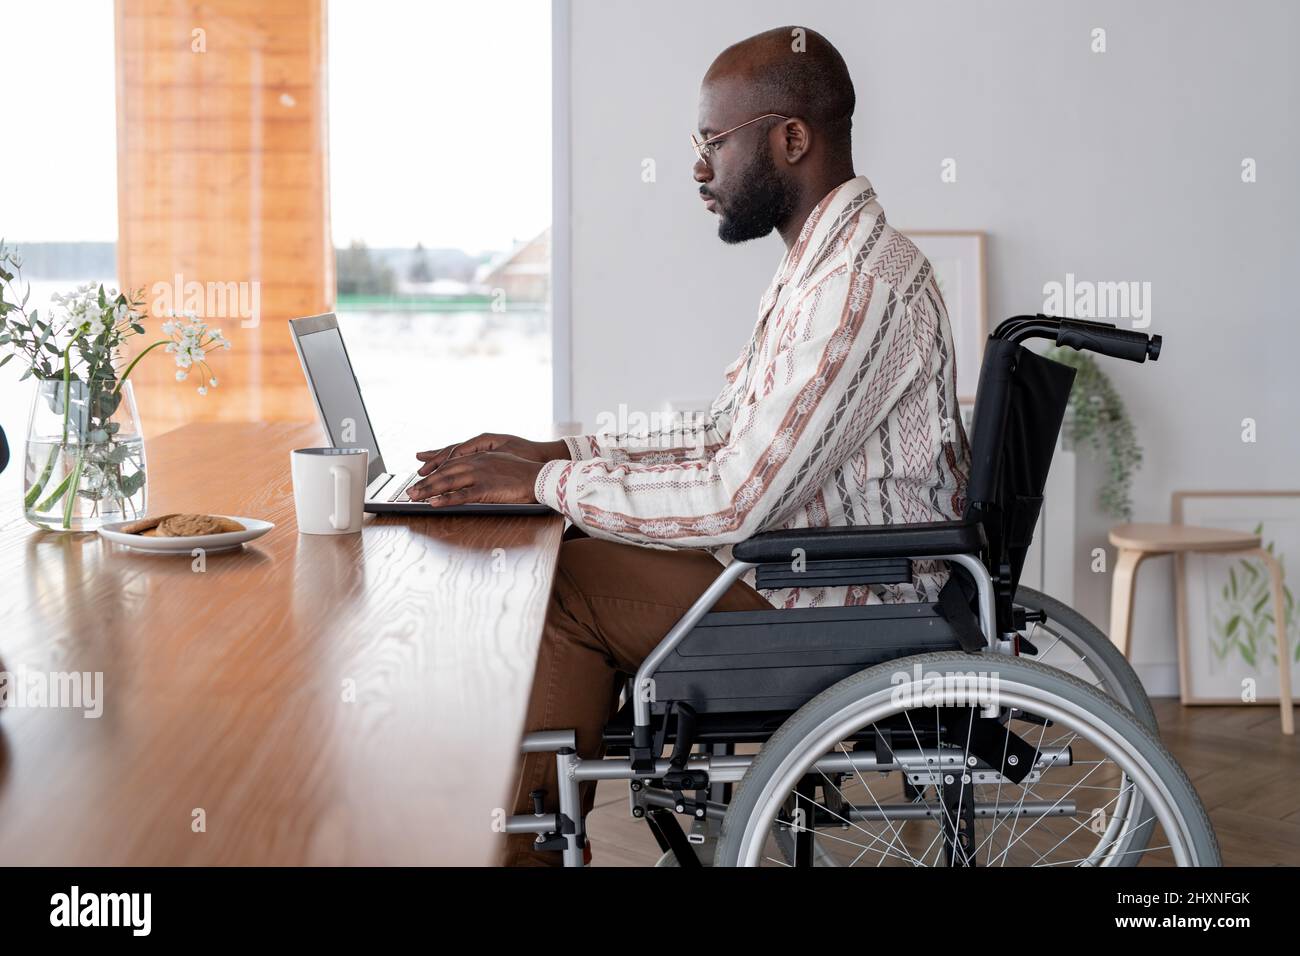 Vue latérale d'un homme noir sérieux travaillant sur Internet ou analysant des données en ligne assis devant un ordinateur portable près d'une table Banque D'Images